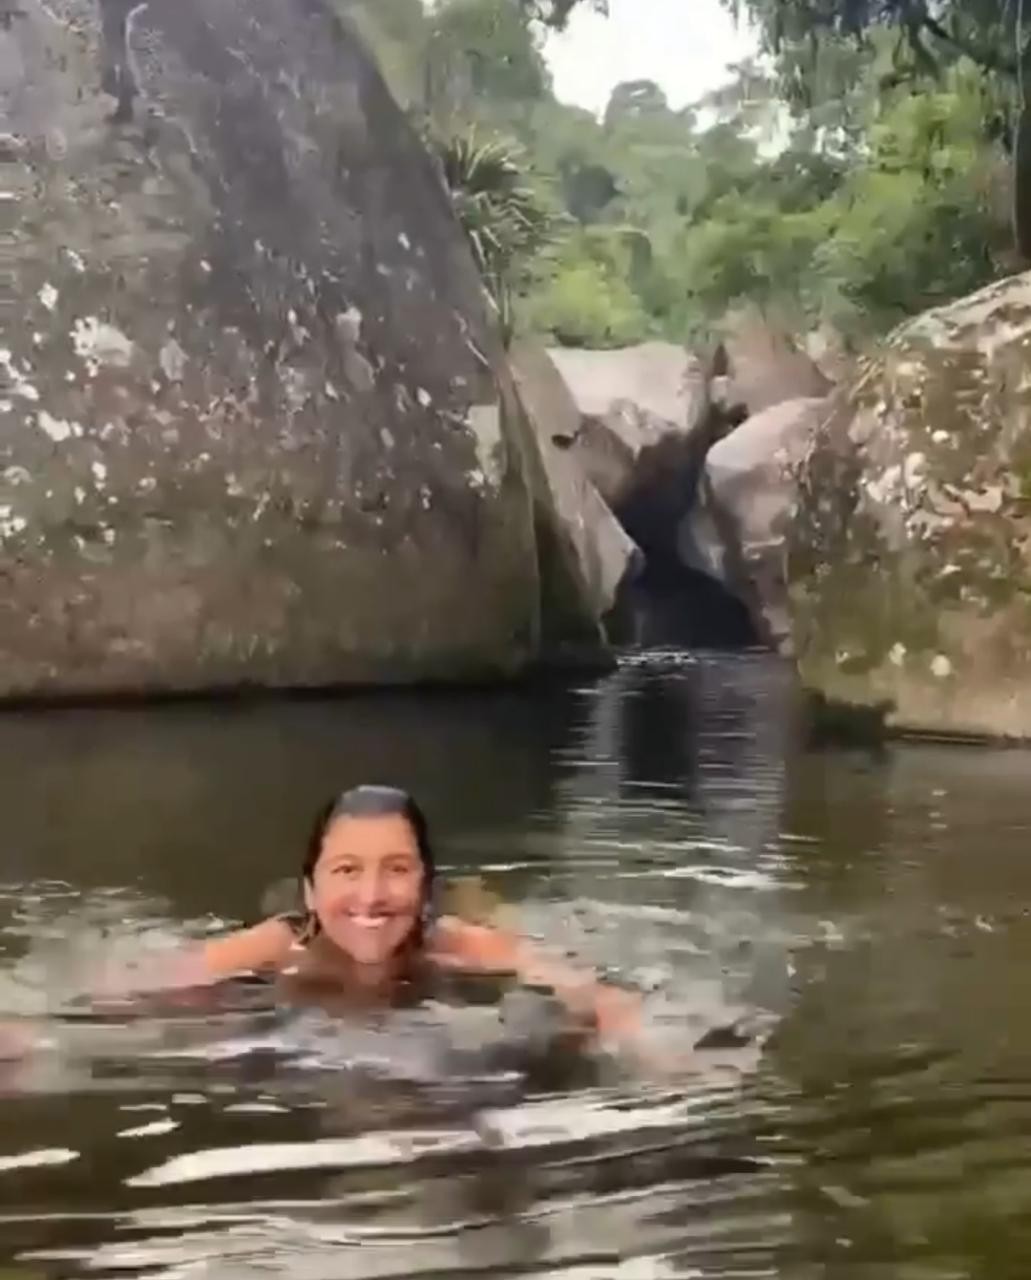 Regina Casé comemora 67 na cachoeira: "água doce, cristalina" (Foto: Reprodução/Instagram)